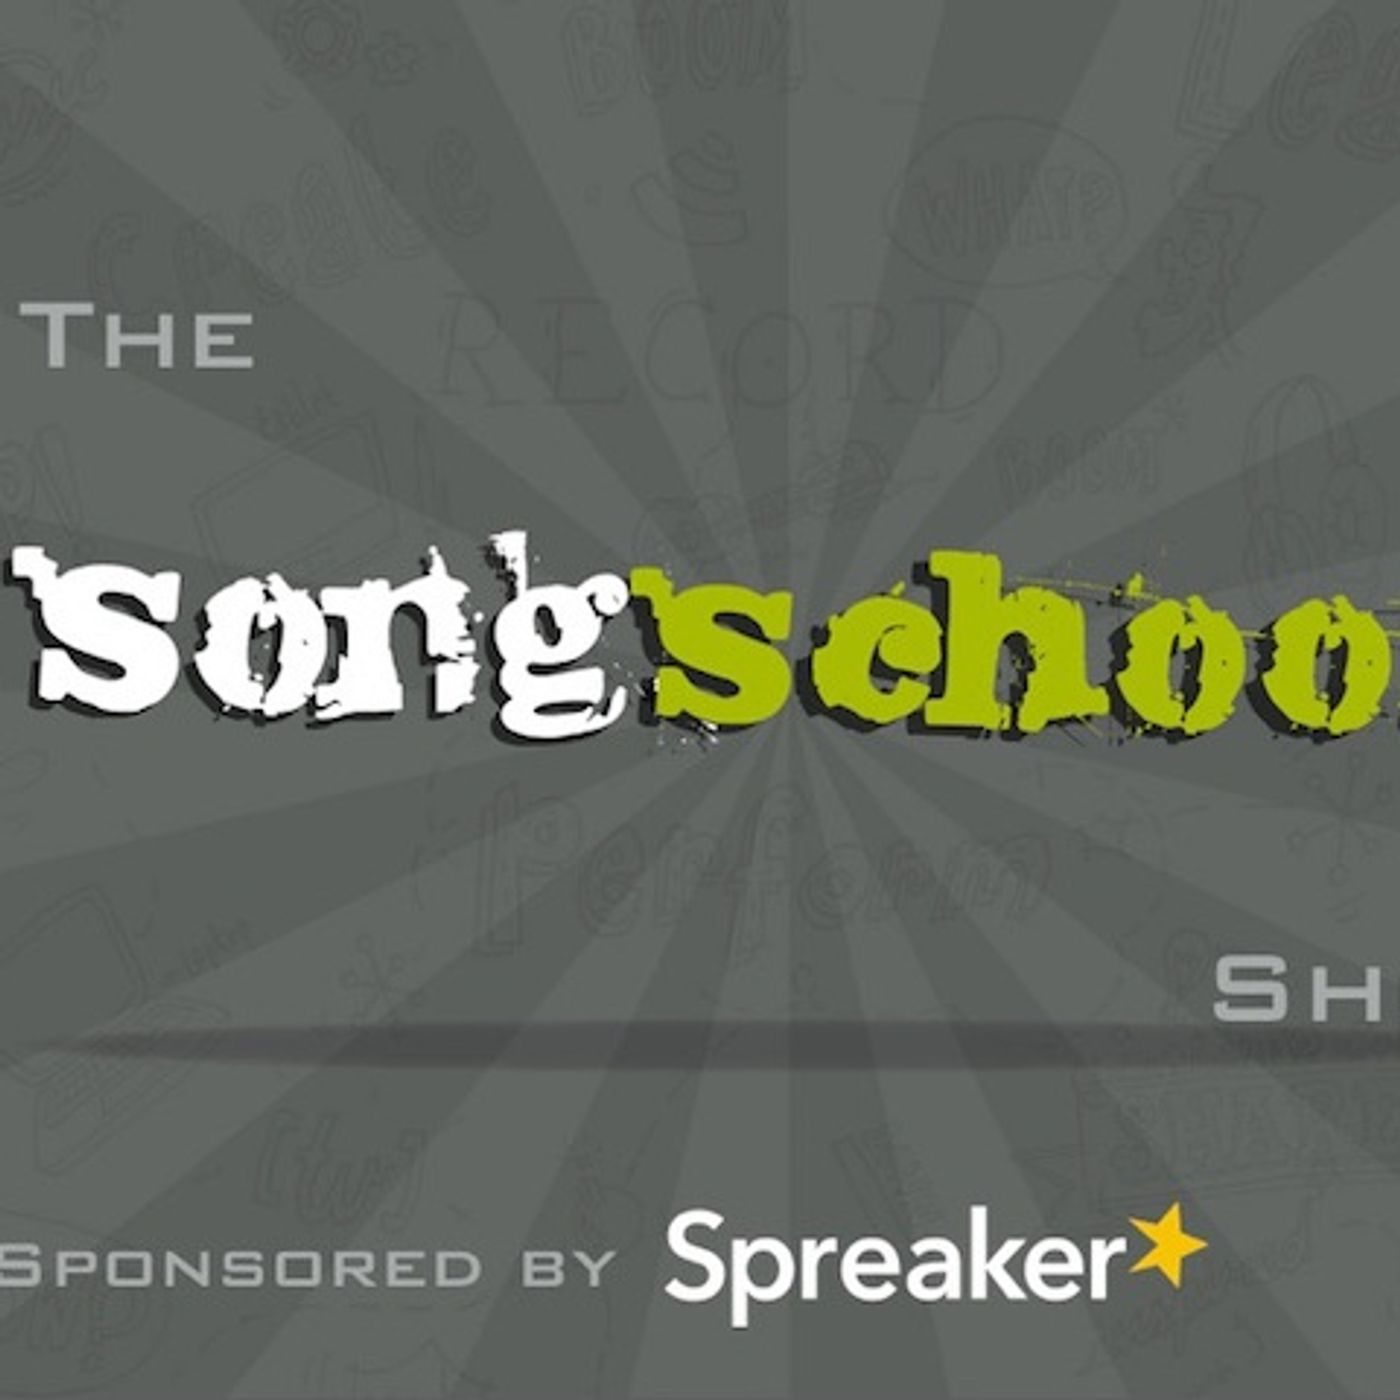 The Songschool Show @ Coláiste Íosagáin